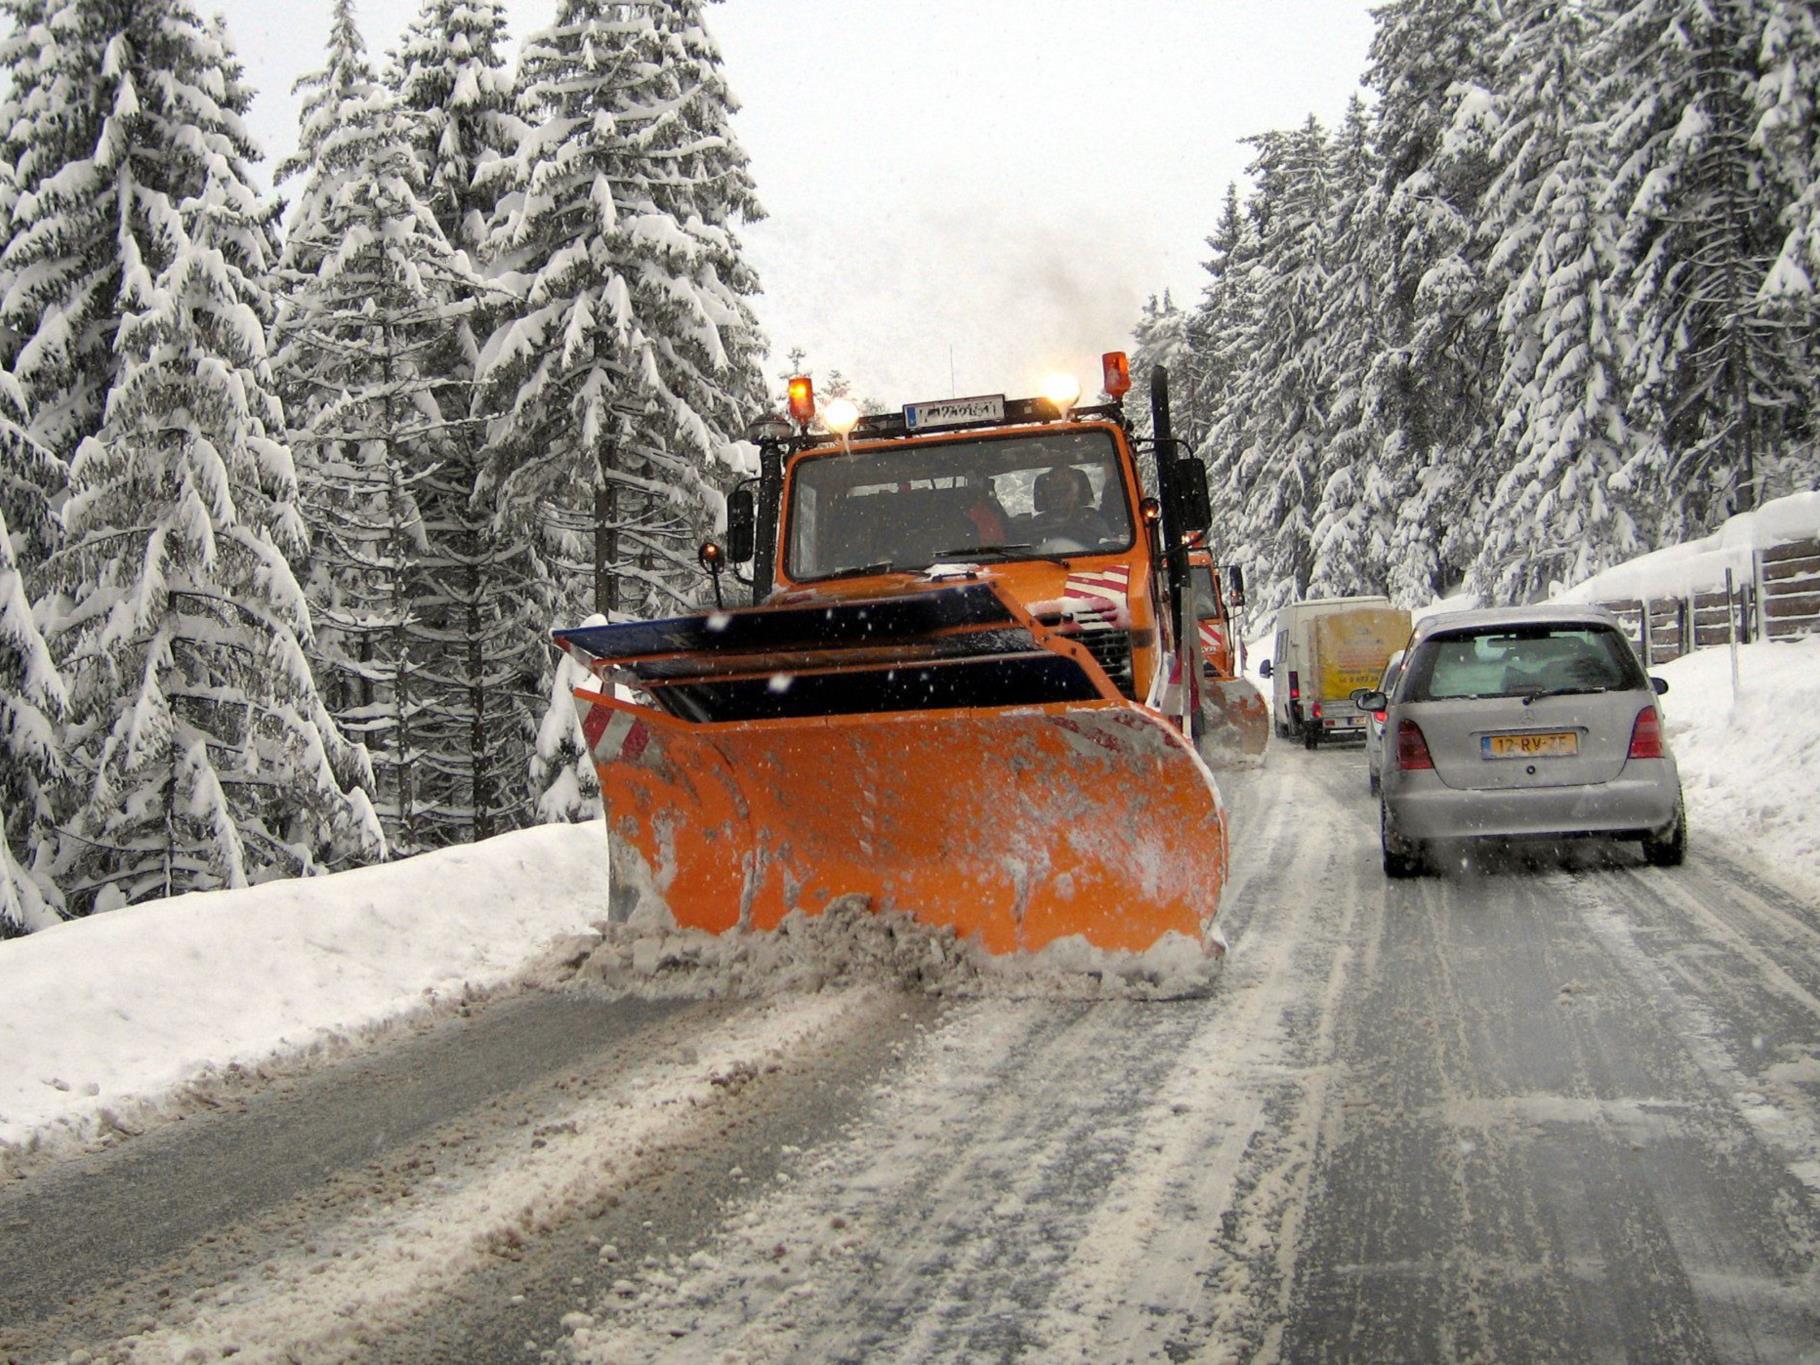 VCÖ rät zur Vorsicht bei winterlichen Fahrbahnverhältnissen.